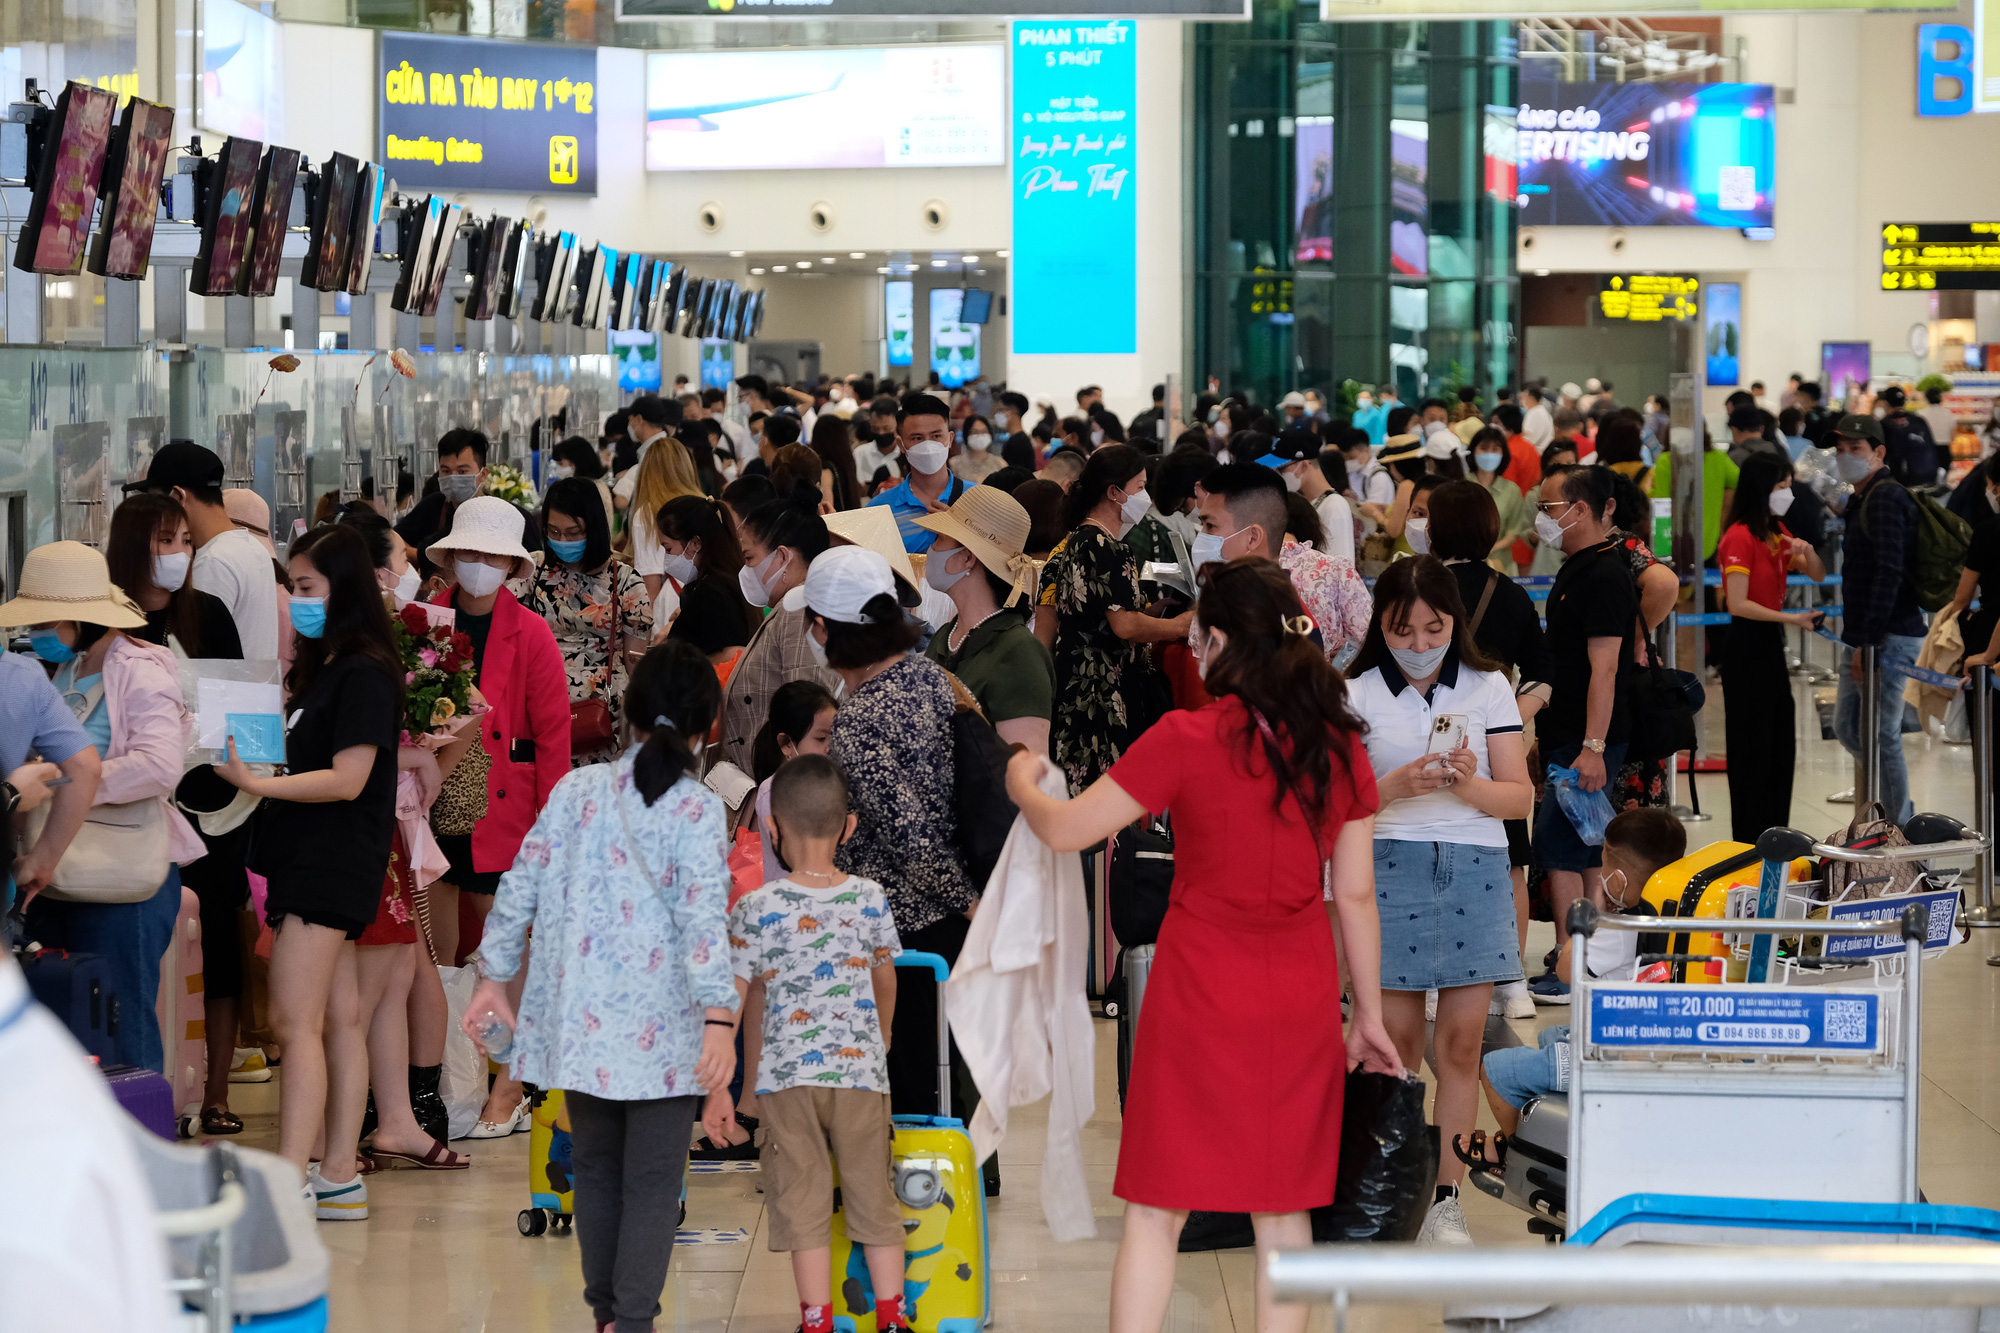 Sân bay Nội Bài đông đúc trước ngày nghỉ lễ, người người nhà nhà đi lu lịch sau tròn 1 năm làn sóng dịch lần thứ 4 - Ảnh 3.